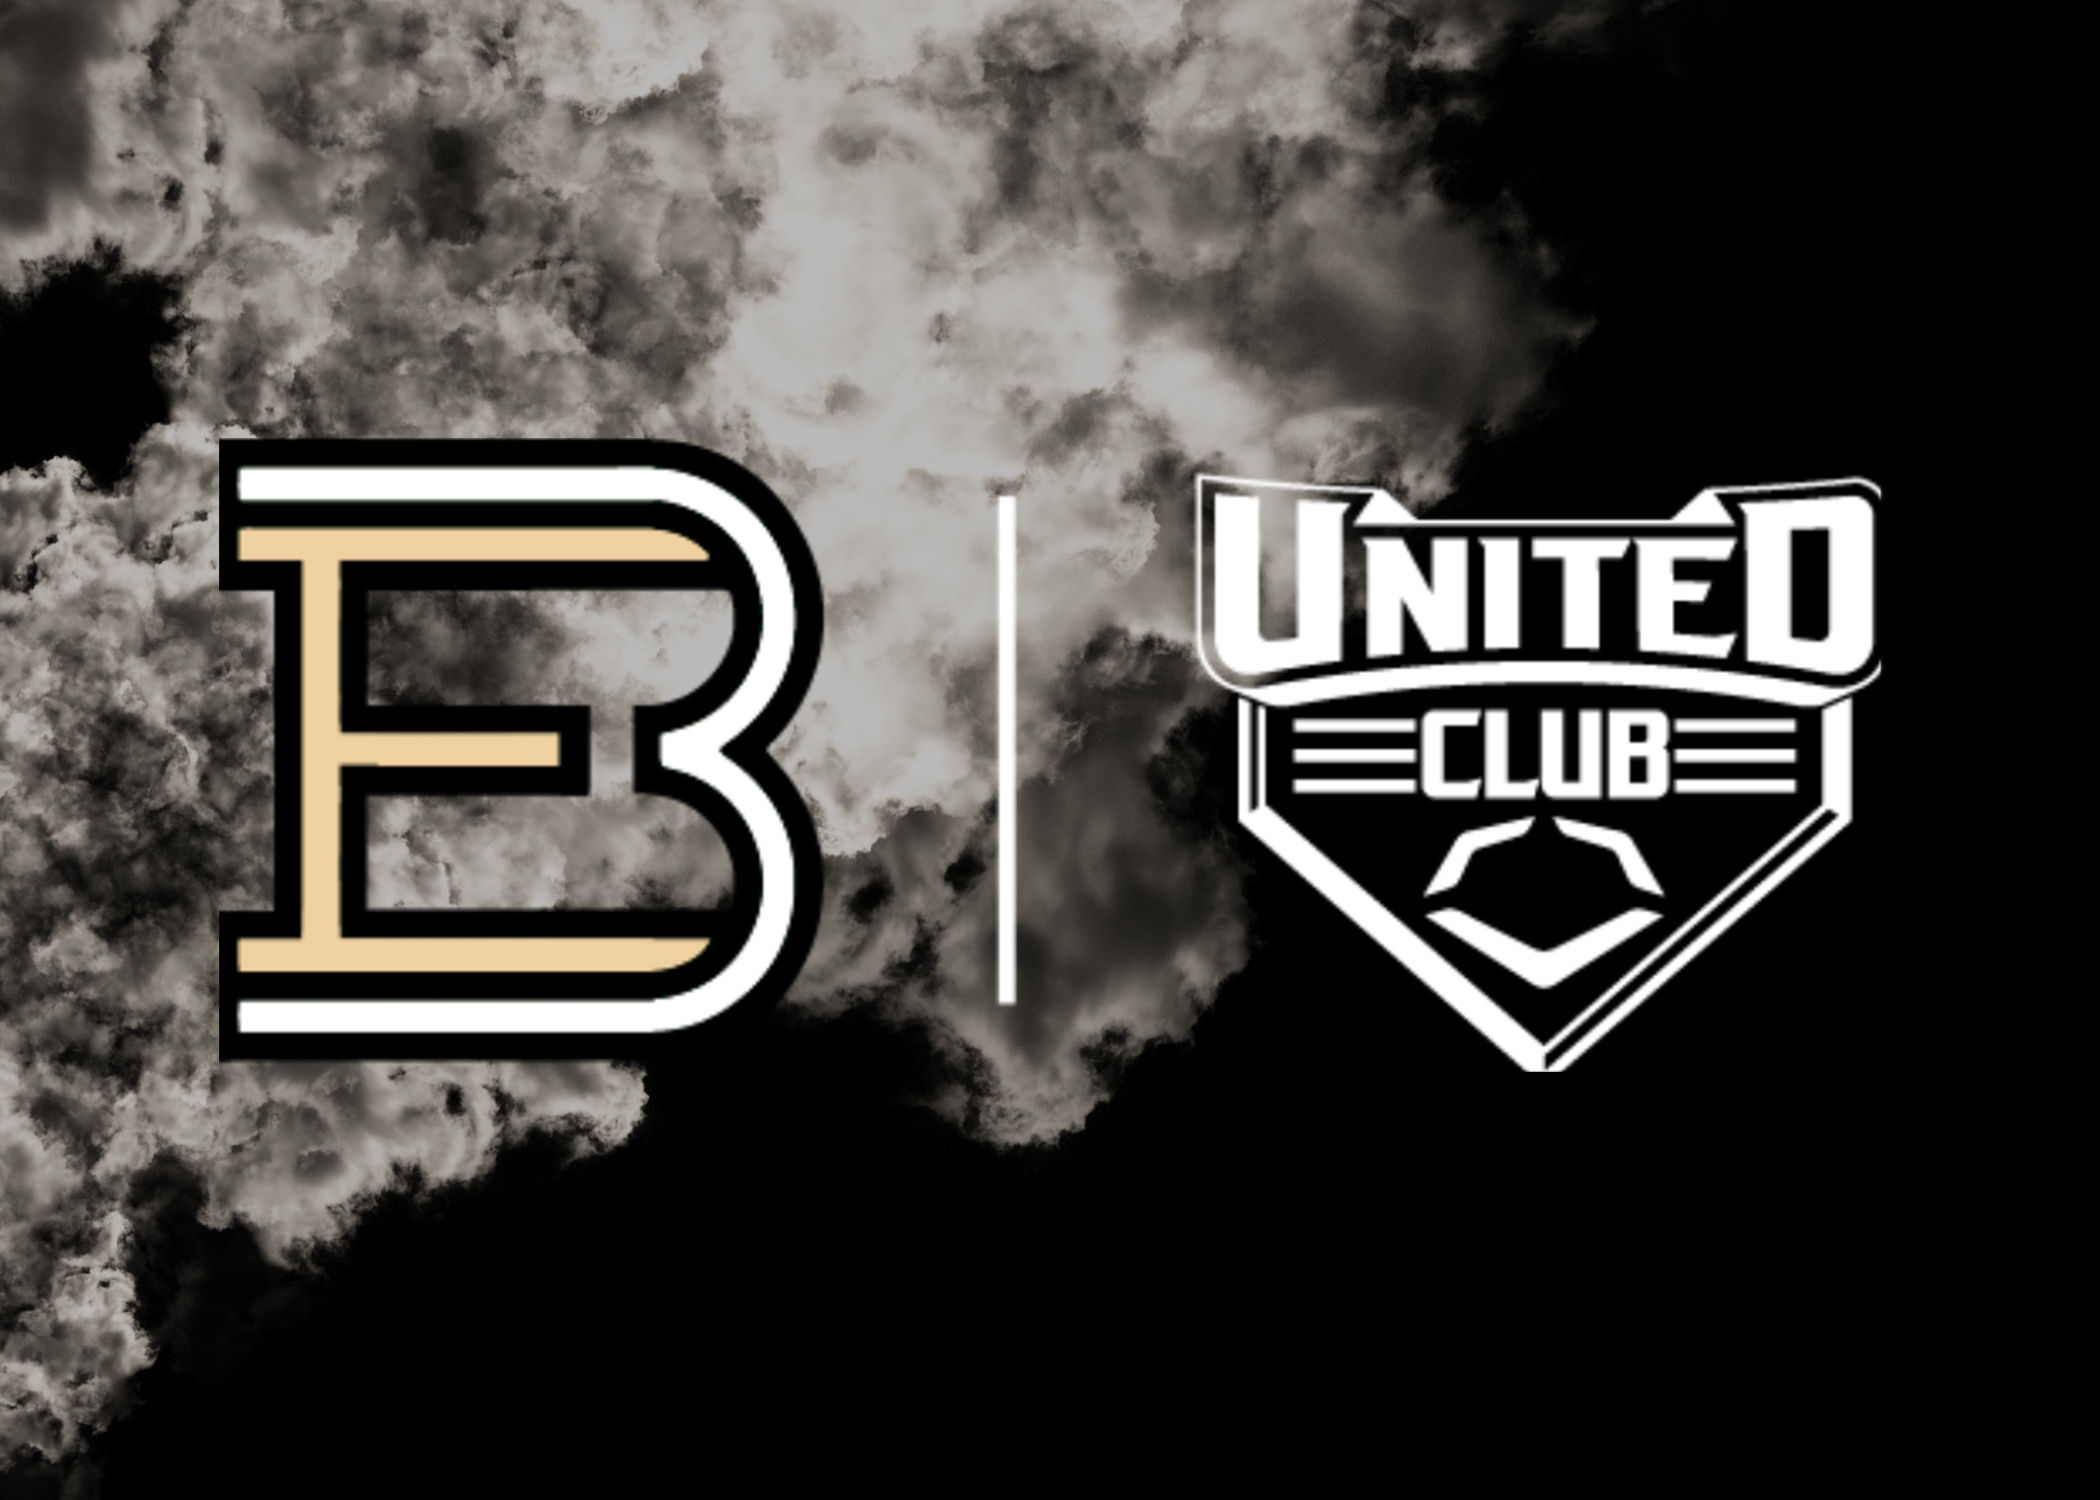 United Club Membership